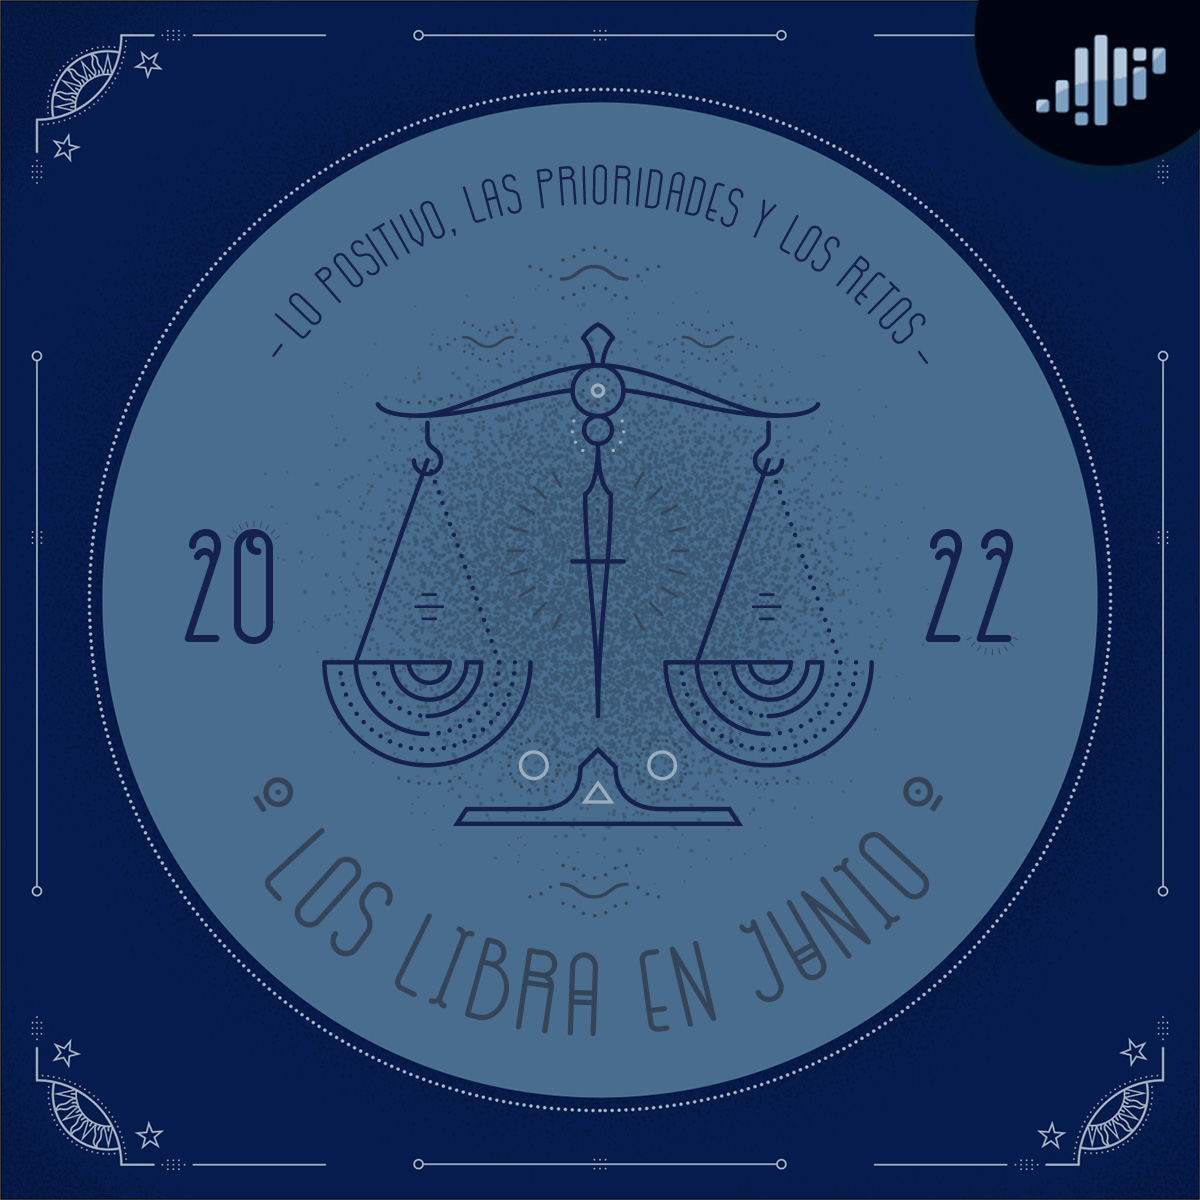 Podcast de astrología | Libra en junio de 2022 | Signos Zodiacales